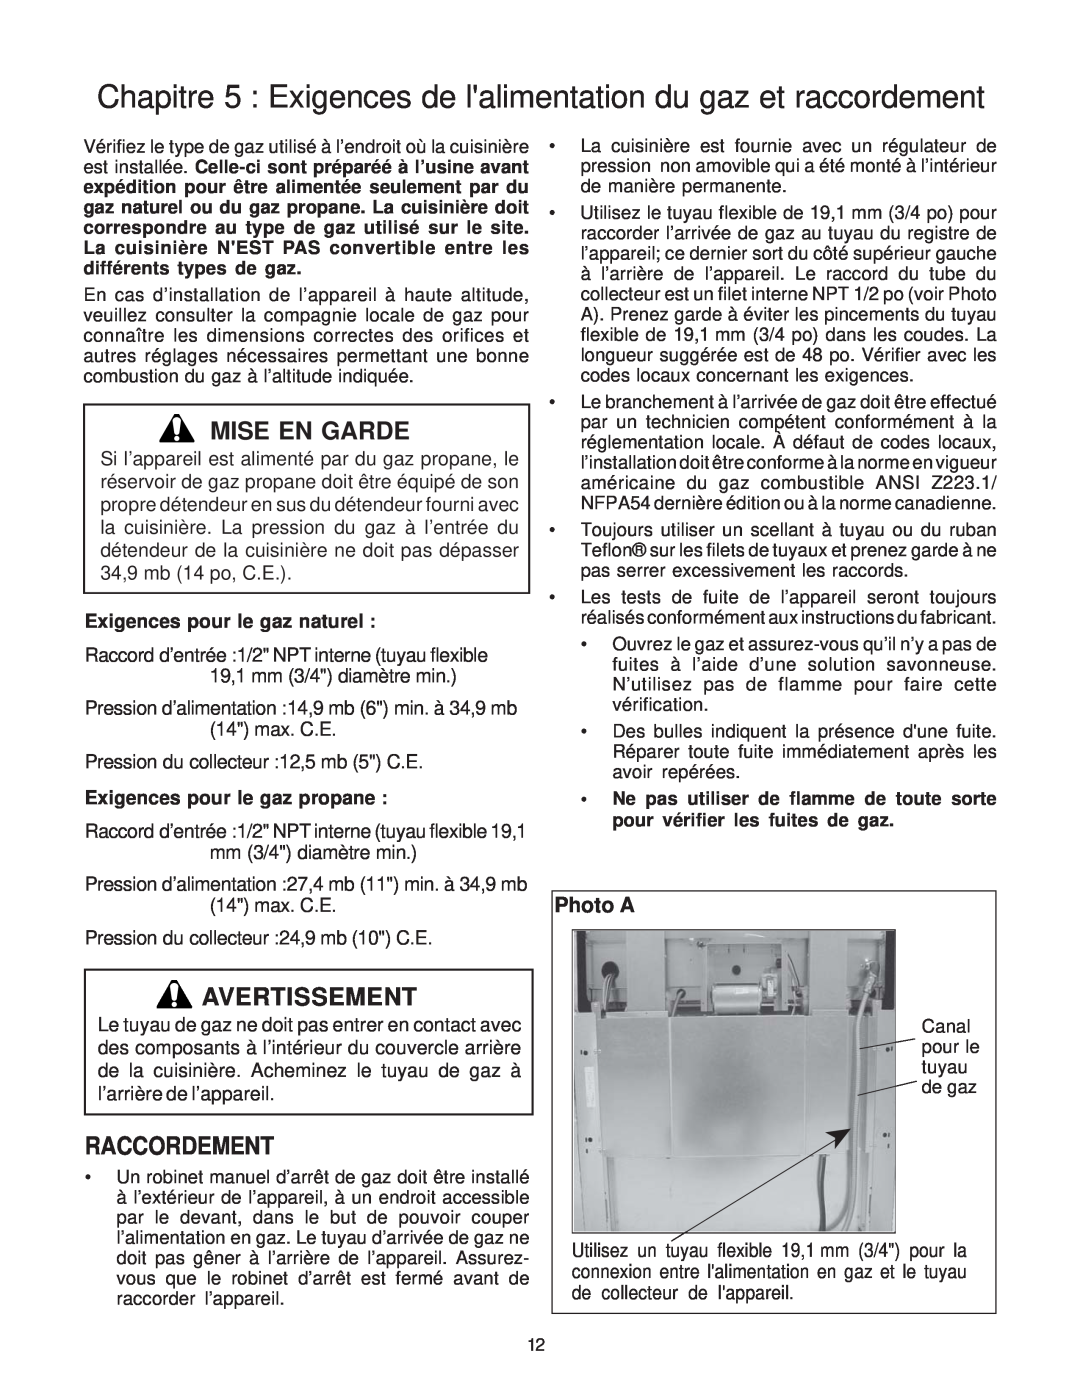 Thermador P30 installation instructions Raccordement, Mise En Garde, Avertissement, Photo A, Exigences pour le gaz naturel 